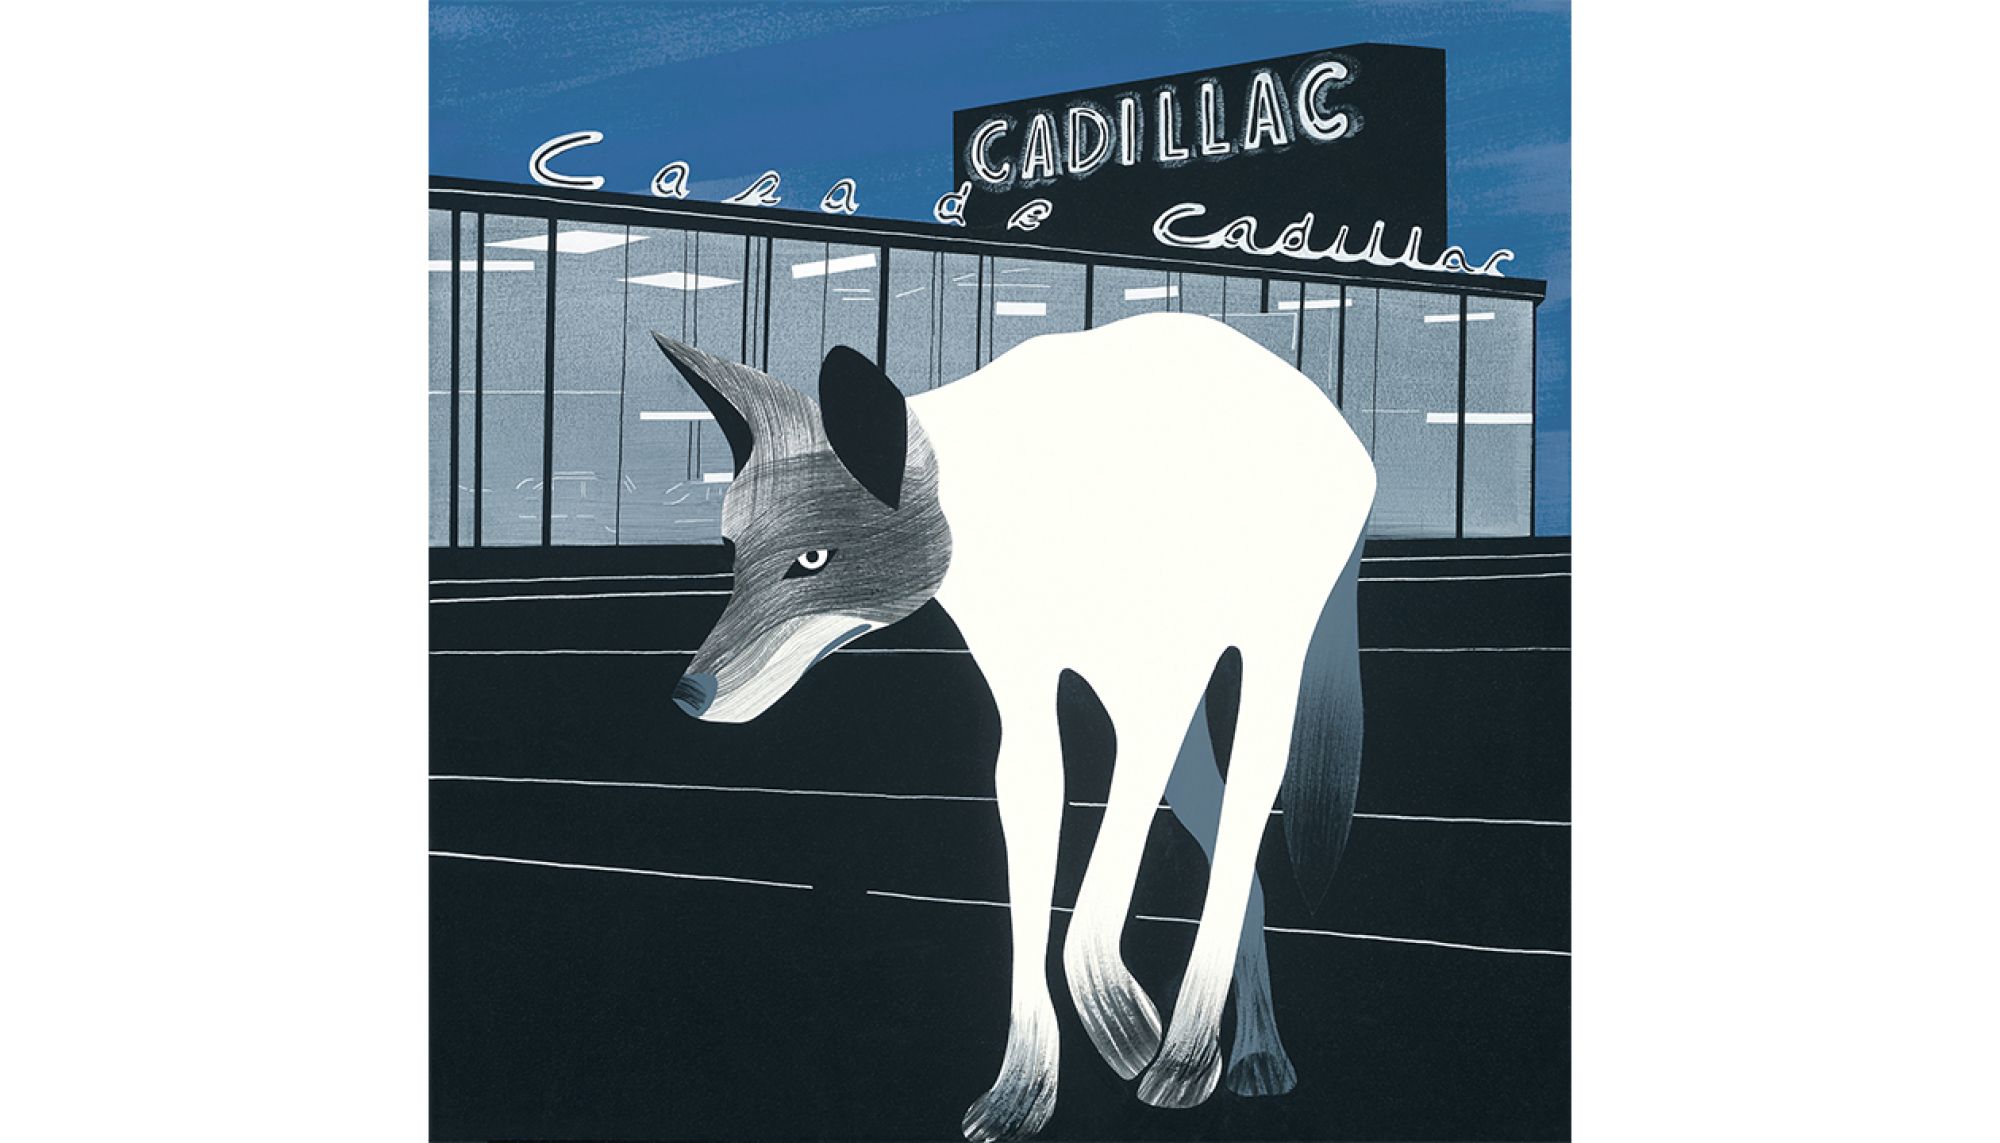 Casa de Cadillac, 2018 (Acrylic on linen, 24 by 24 inches)